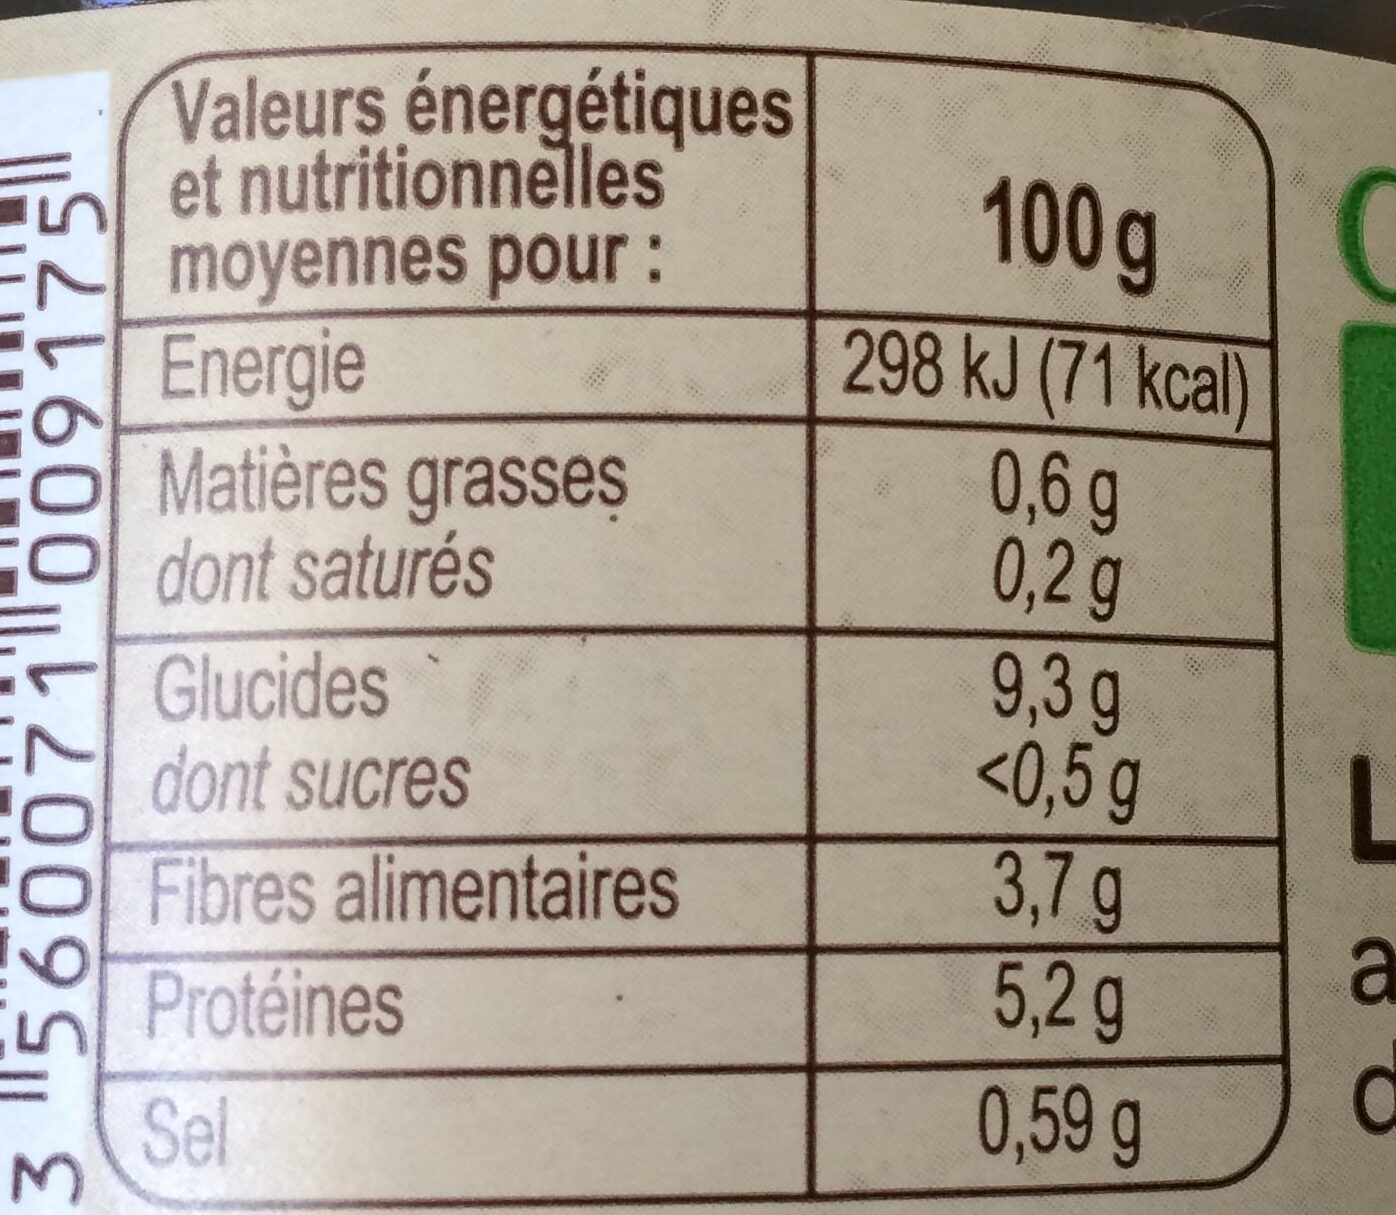 Lentilles vertes au sel de Noirmoutier - Tableau nutritionnel